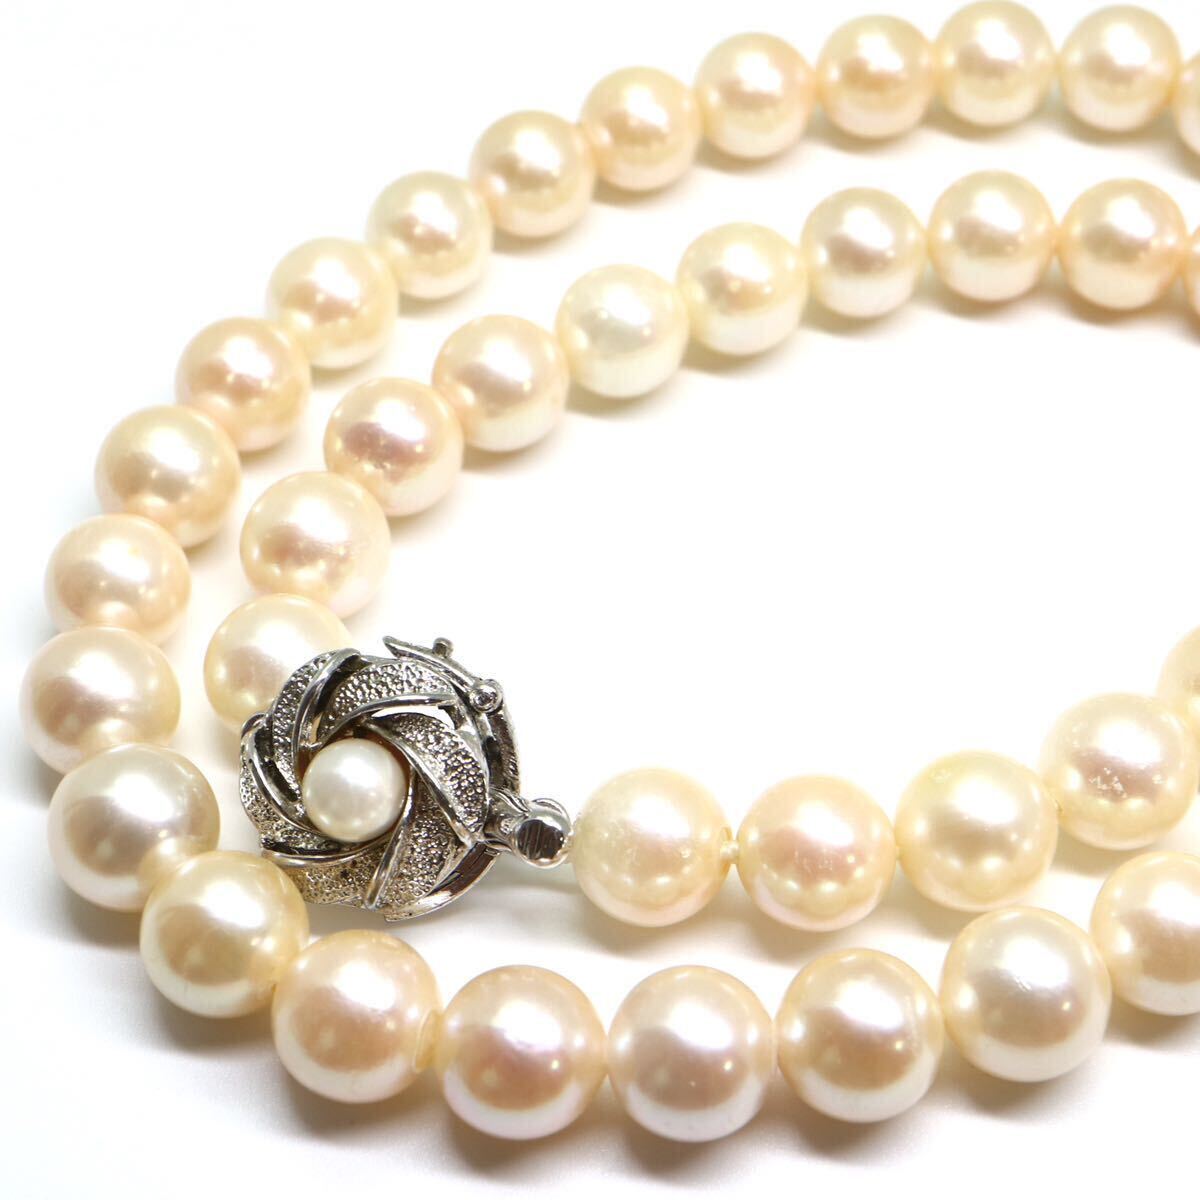 大珠!!《アコヤ本真珠ネックレス》M 49.2g 約8.5-9.0mm珠 約43.5cm pearl necklace ジュエリー jewelry DE0/DH0の画像1